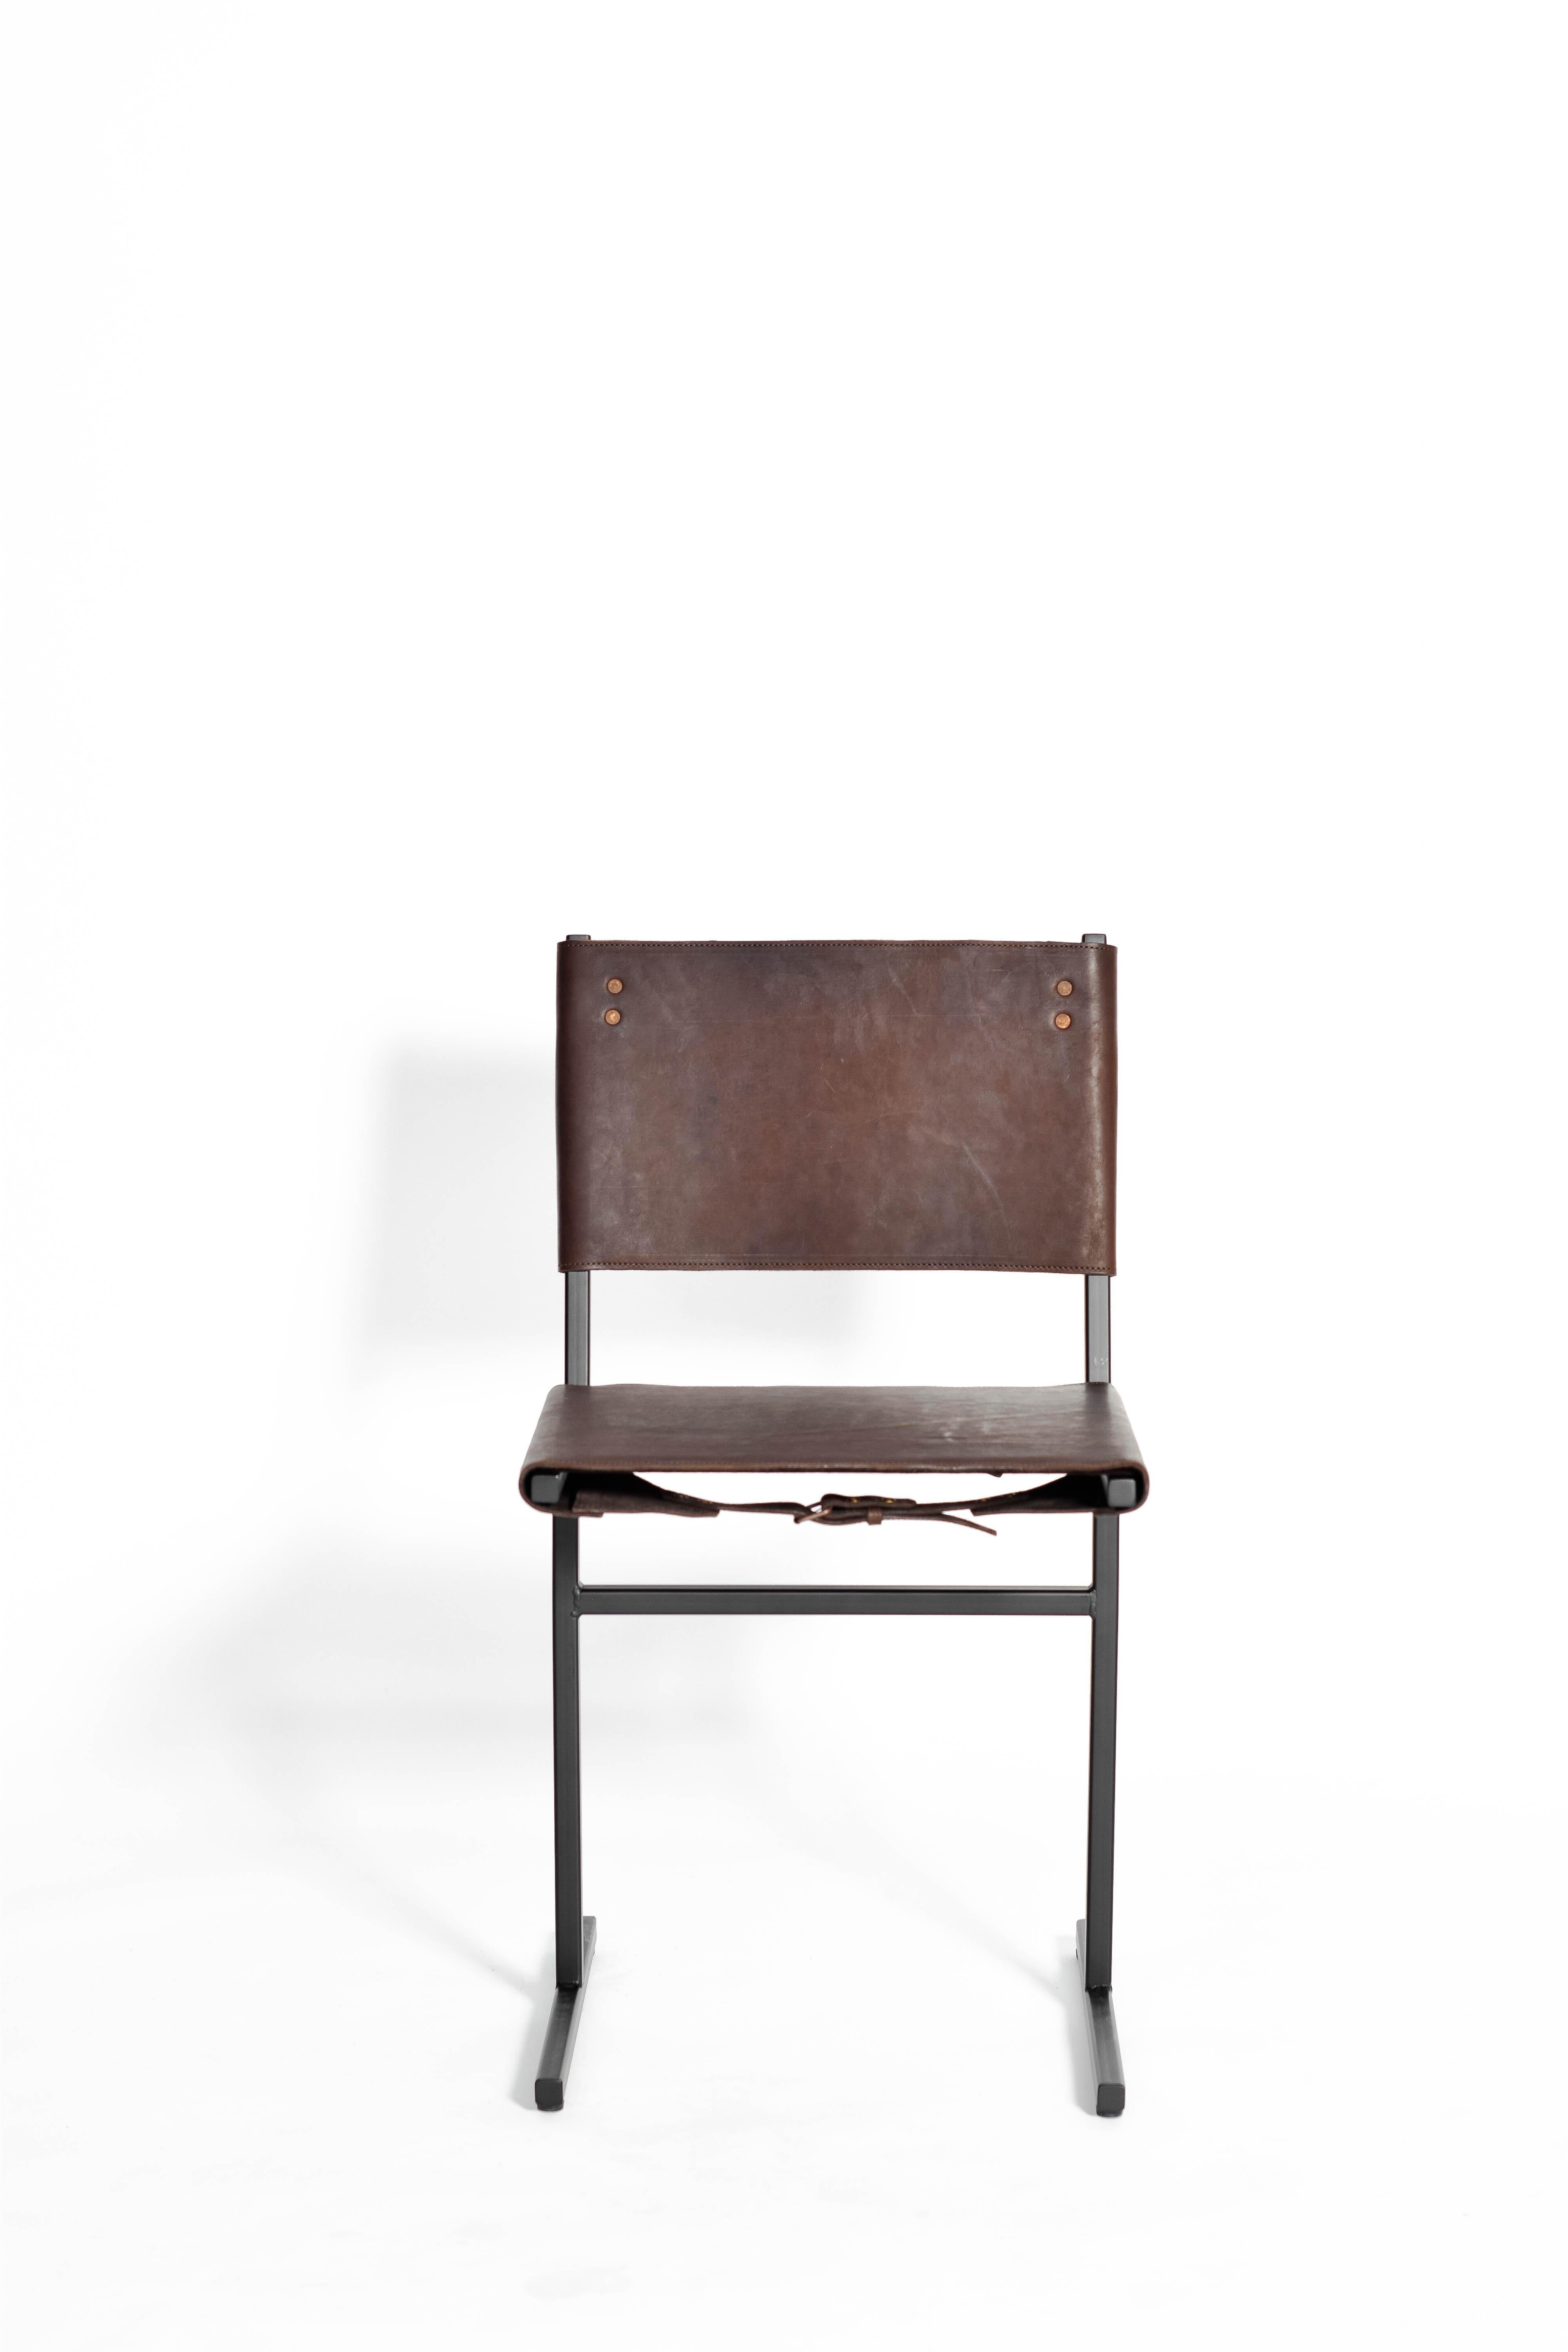 Moss Green Memento Chair, Jesse Sanderson 5